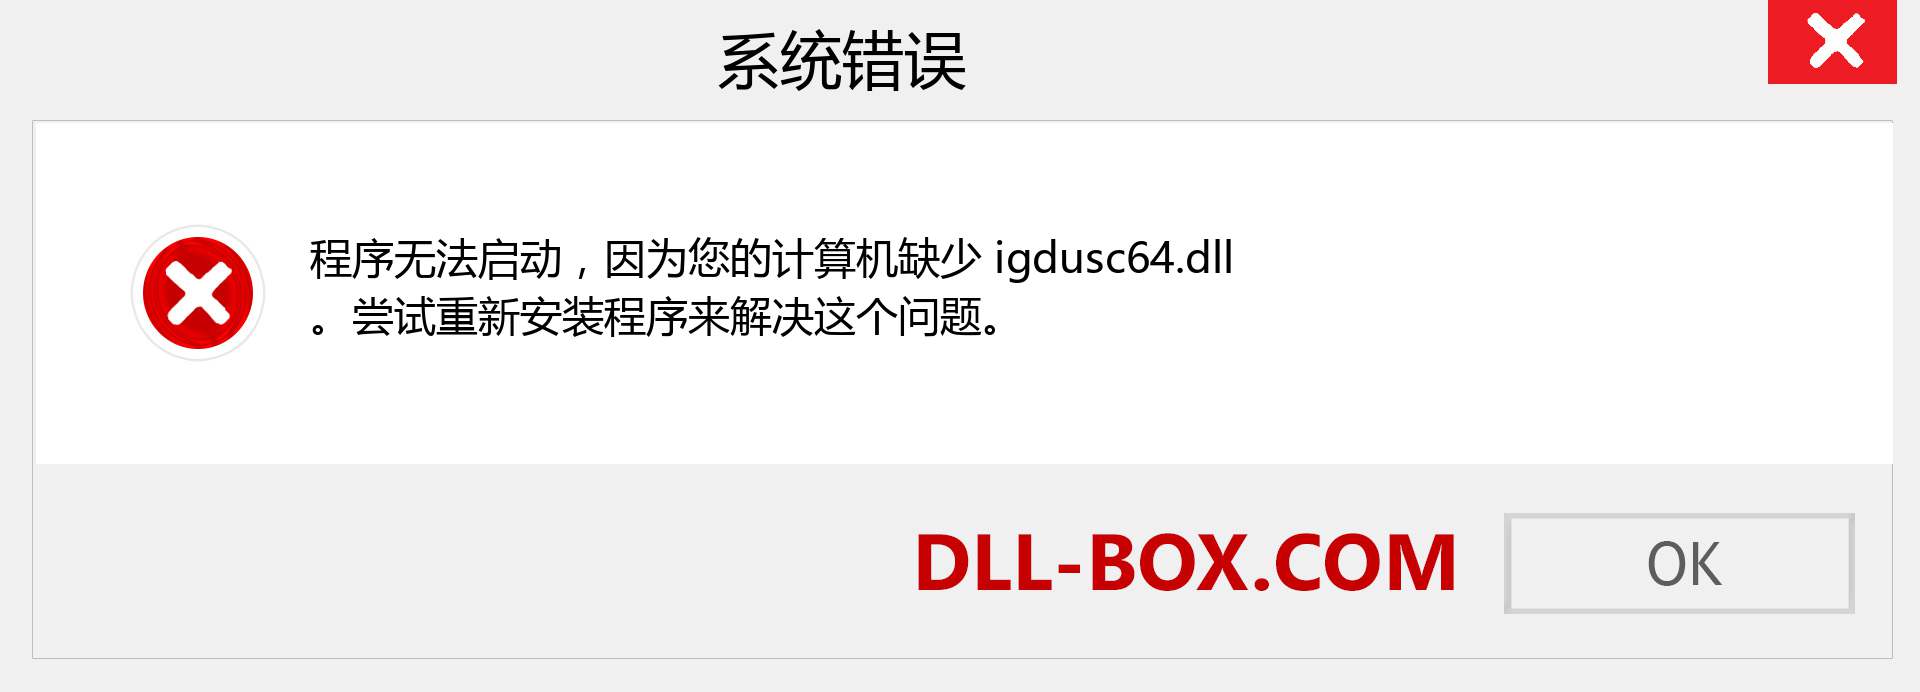 igdusc64.dll 文件丢失？。 适用于 Windows 7、8、10 的下载 - 修复 Windows、照片、图像上的 igdusc64 dll 丢失错误